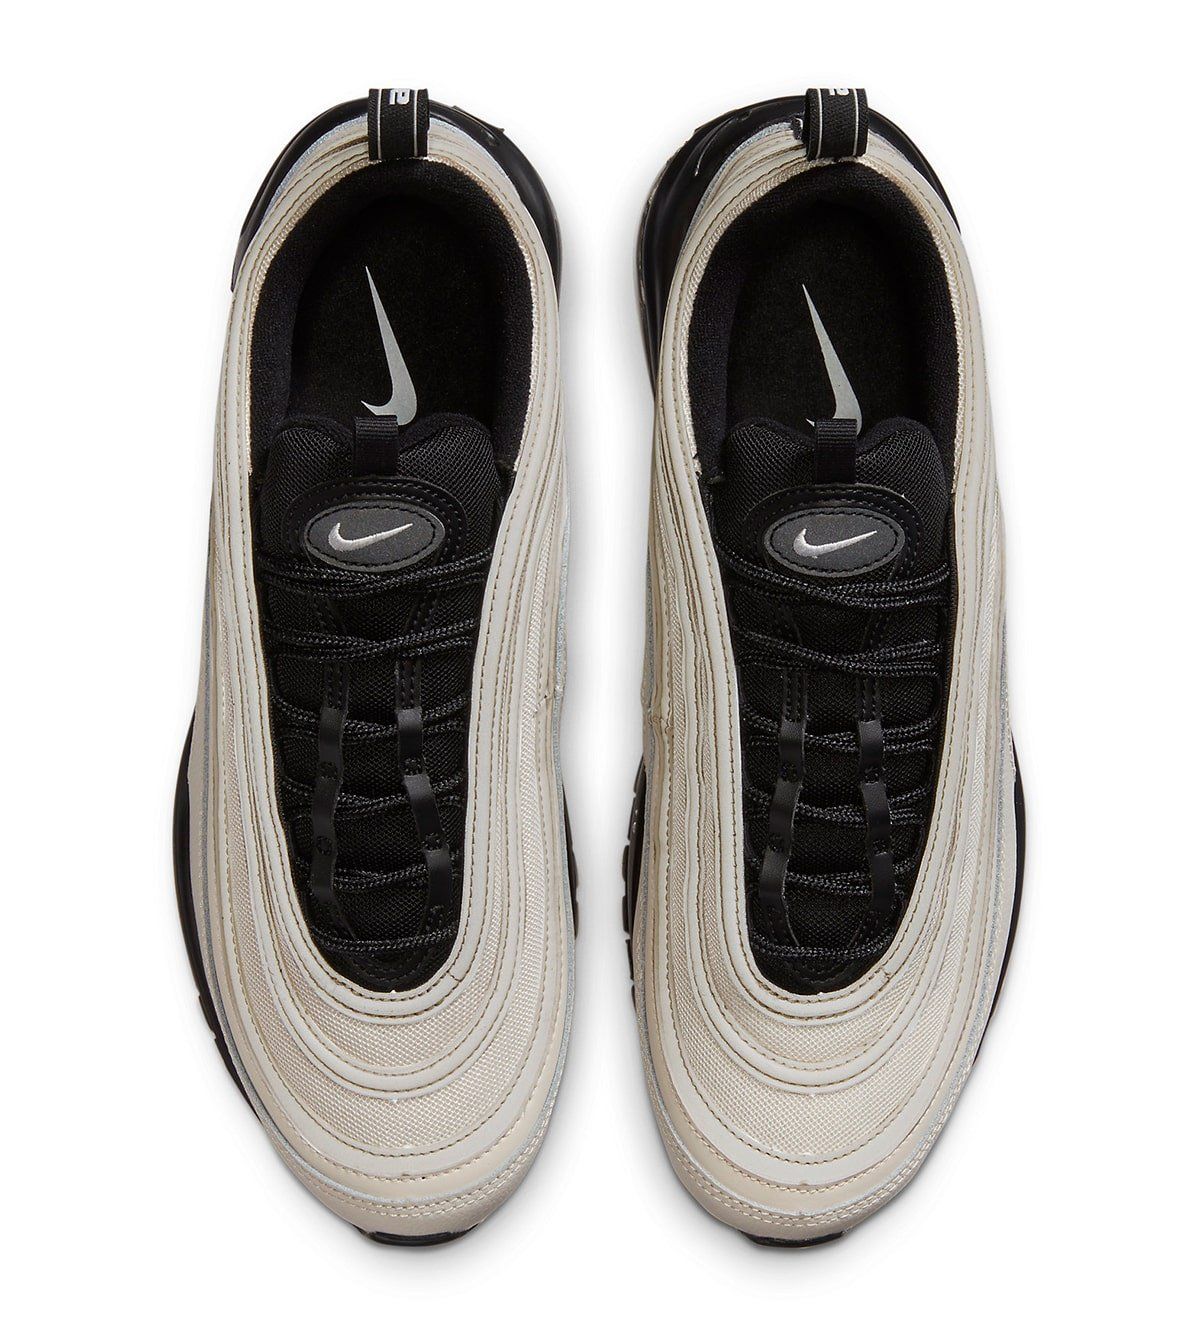 Nike to Drop Ladies-Exclusive Air Max 97 “Black Sequin” Soon 